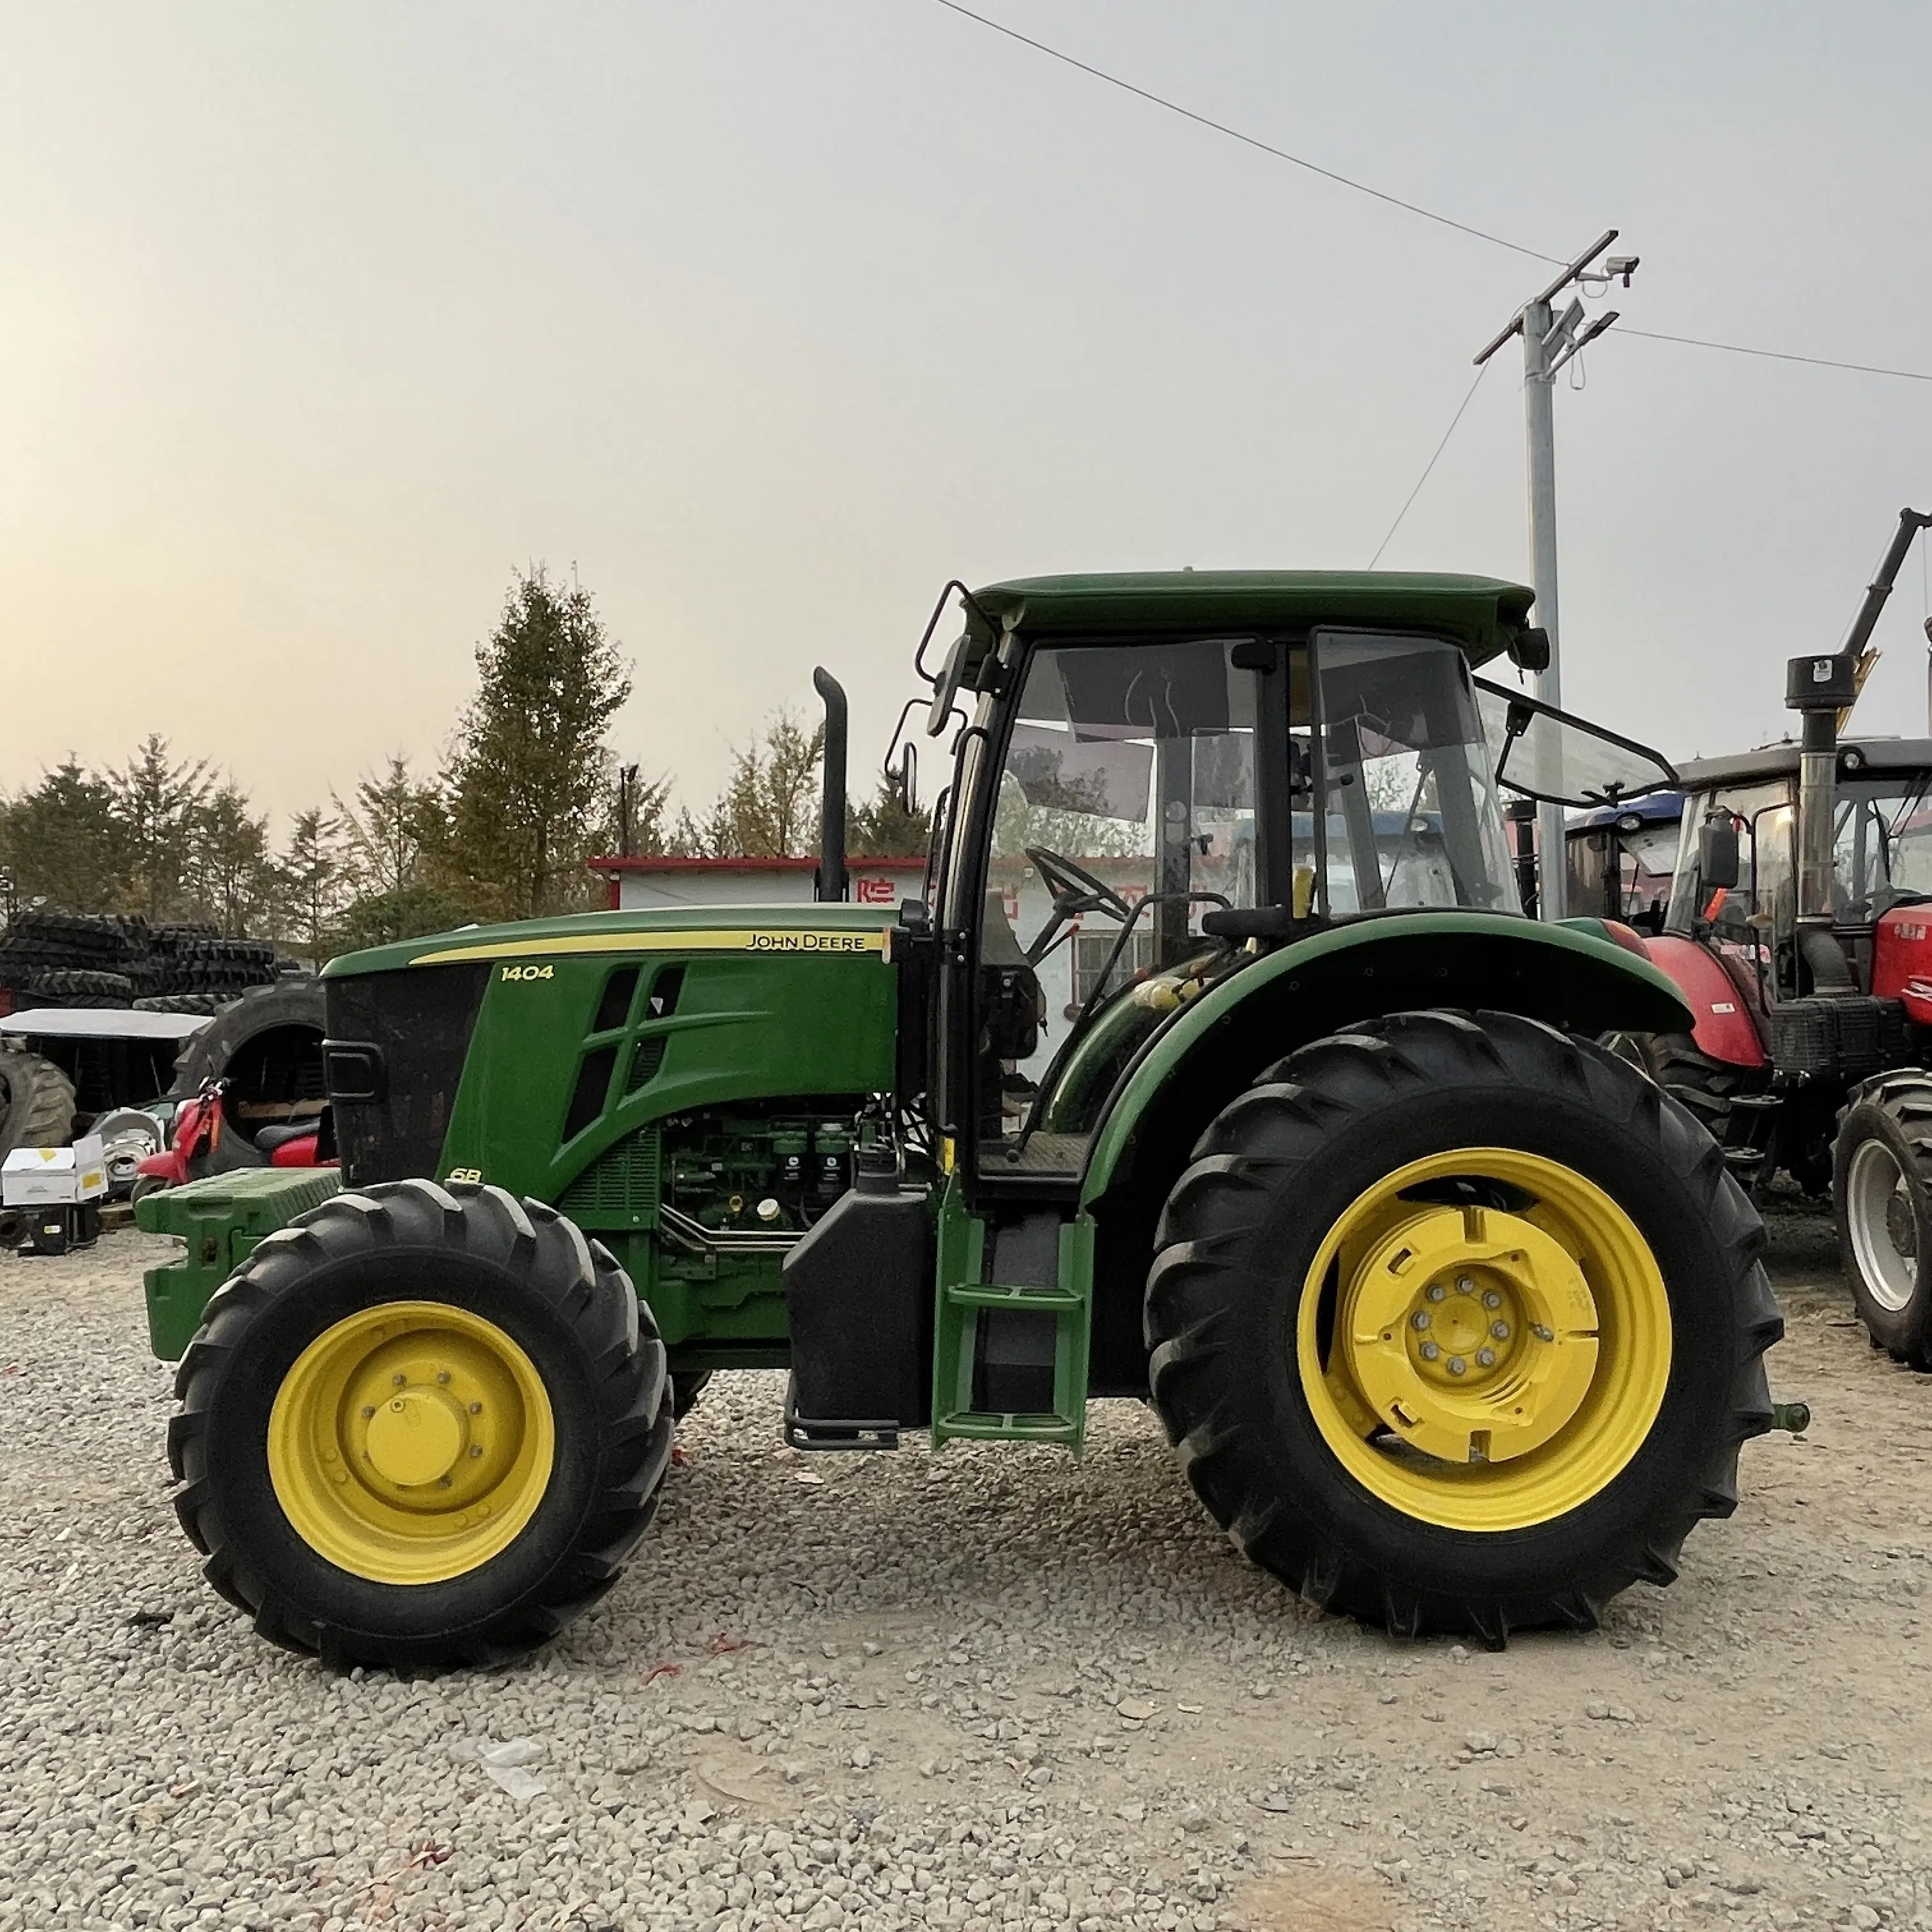 Ikinci el traktörler John 1404 140HP Dere satılık iyi kalite tarım makineleri çiftlik traktörü